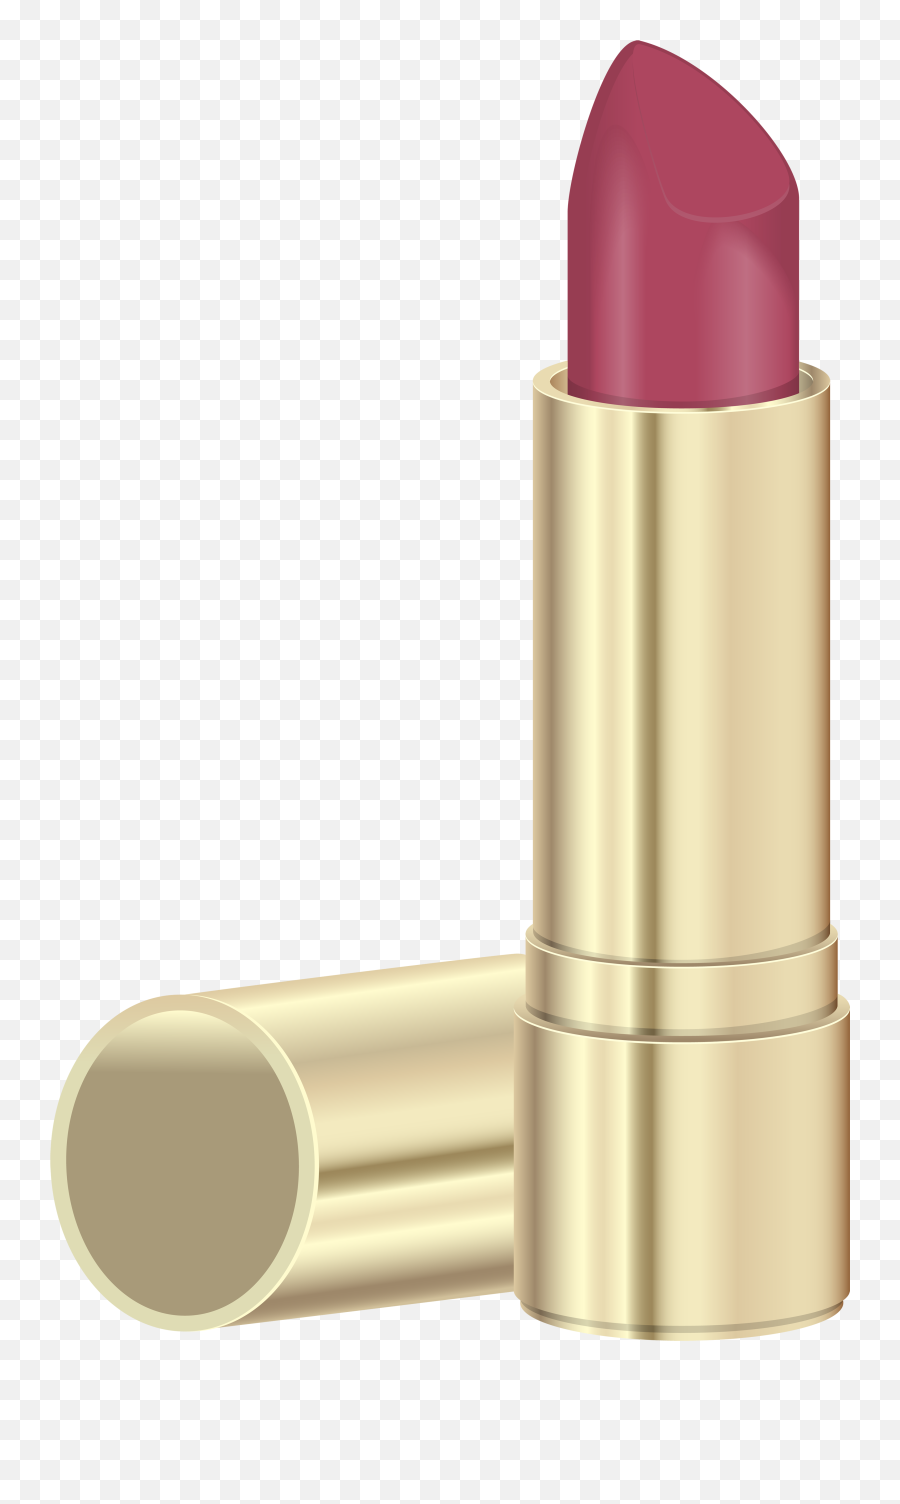 No Lipstick Cliparts Free Download Clip - Clip Art Lipstick Png Emoji,Lipstick Emoji Png